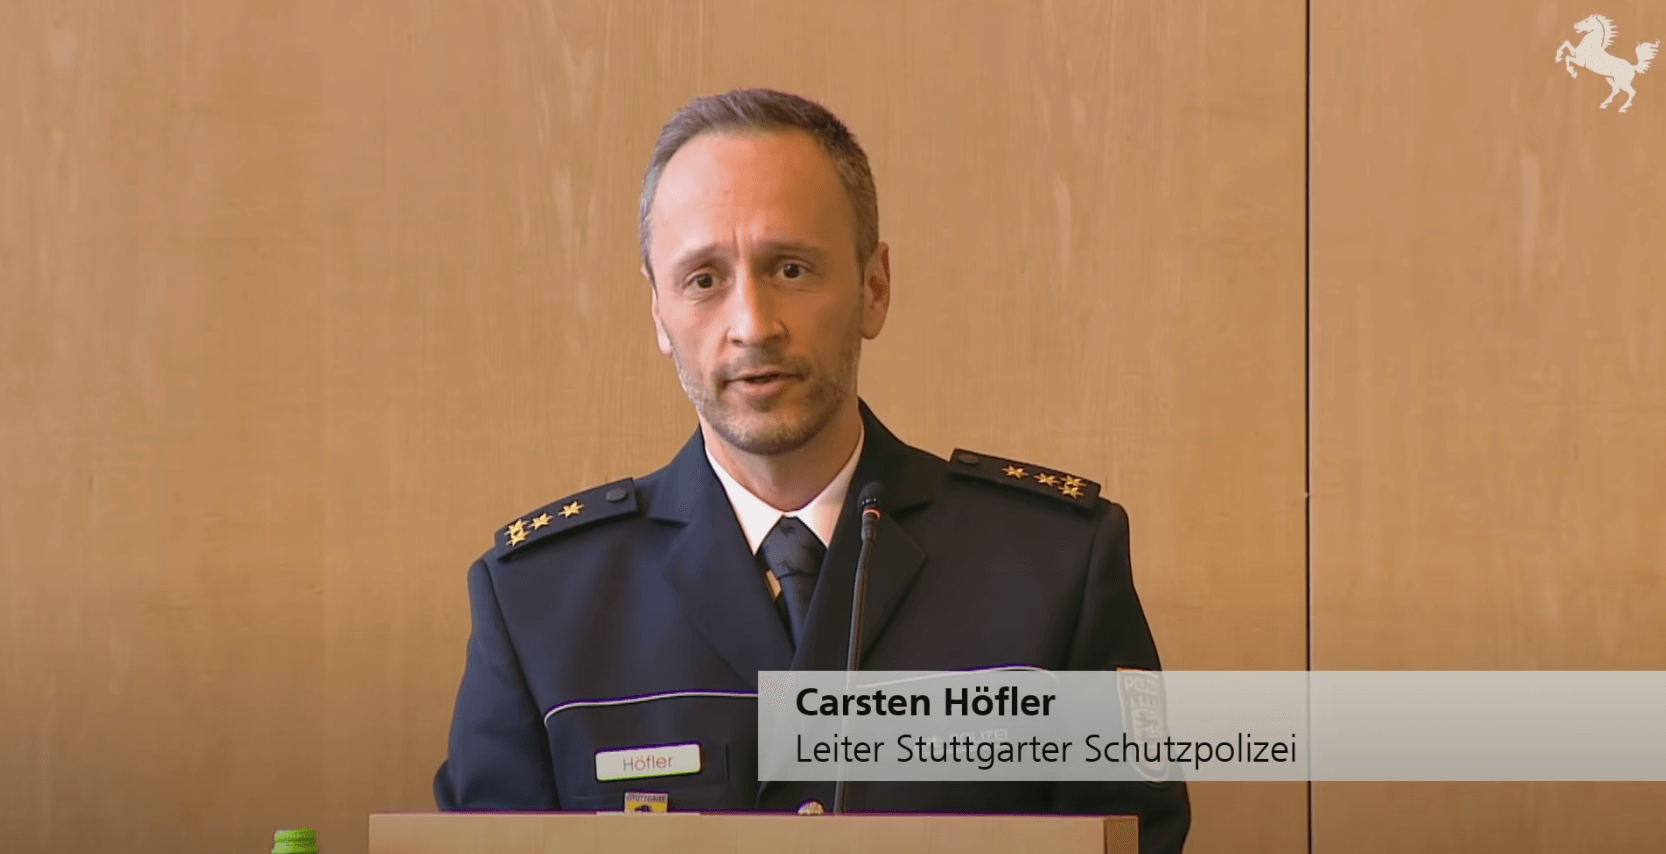 Carsten Höfler ist entgegen kursierender Behauptungen weiterhin Polizeidirektor in Stuttgart. (Quelle: Youtube, Landeshauptstadt Stuttgart / Screenshot: CORRECTIV.Faktencheck)